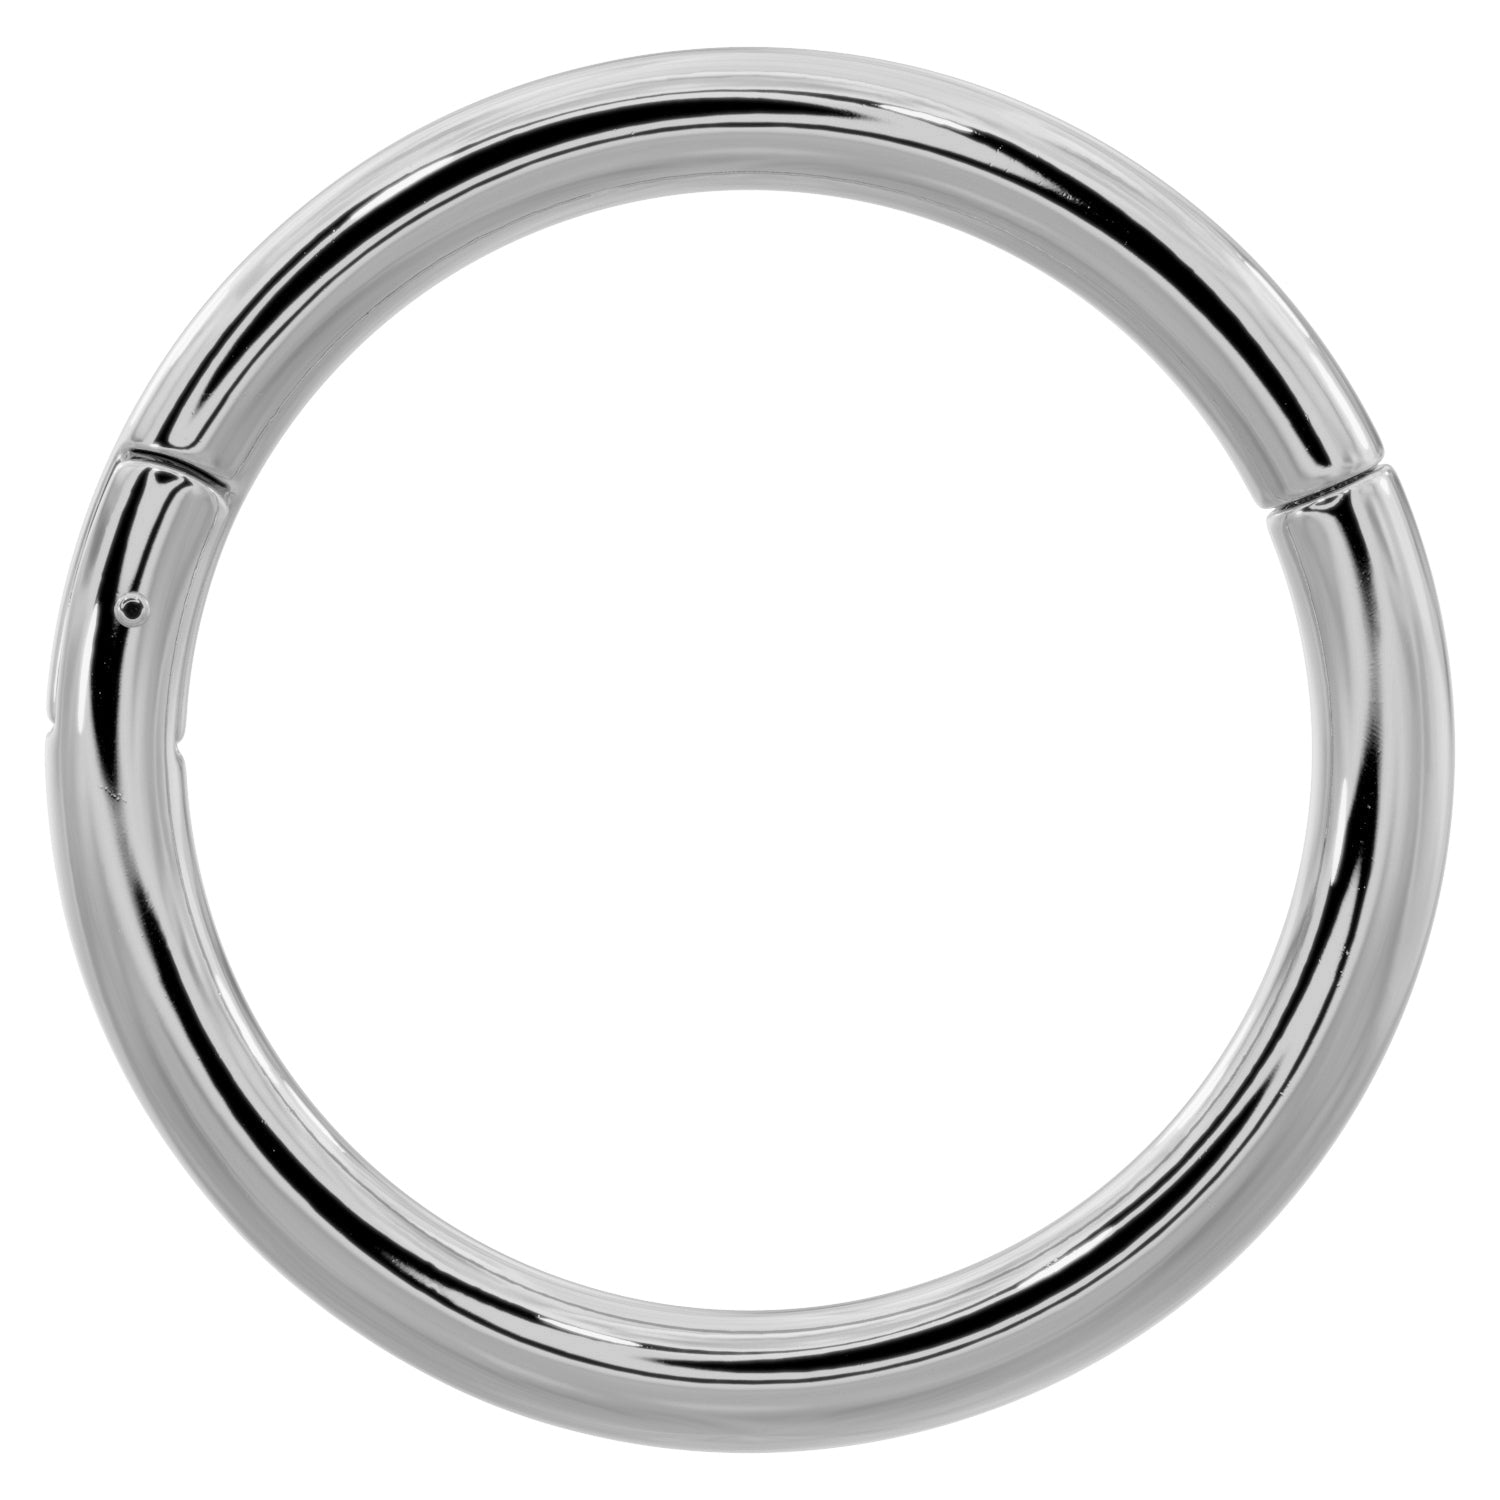 14k Gold Plain Clicker Ring Hoop-14K White Gold   18G (1.0mm)   3 8